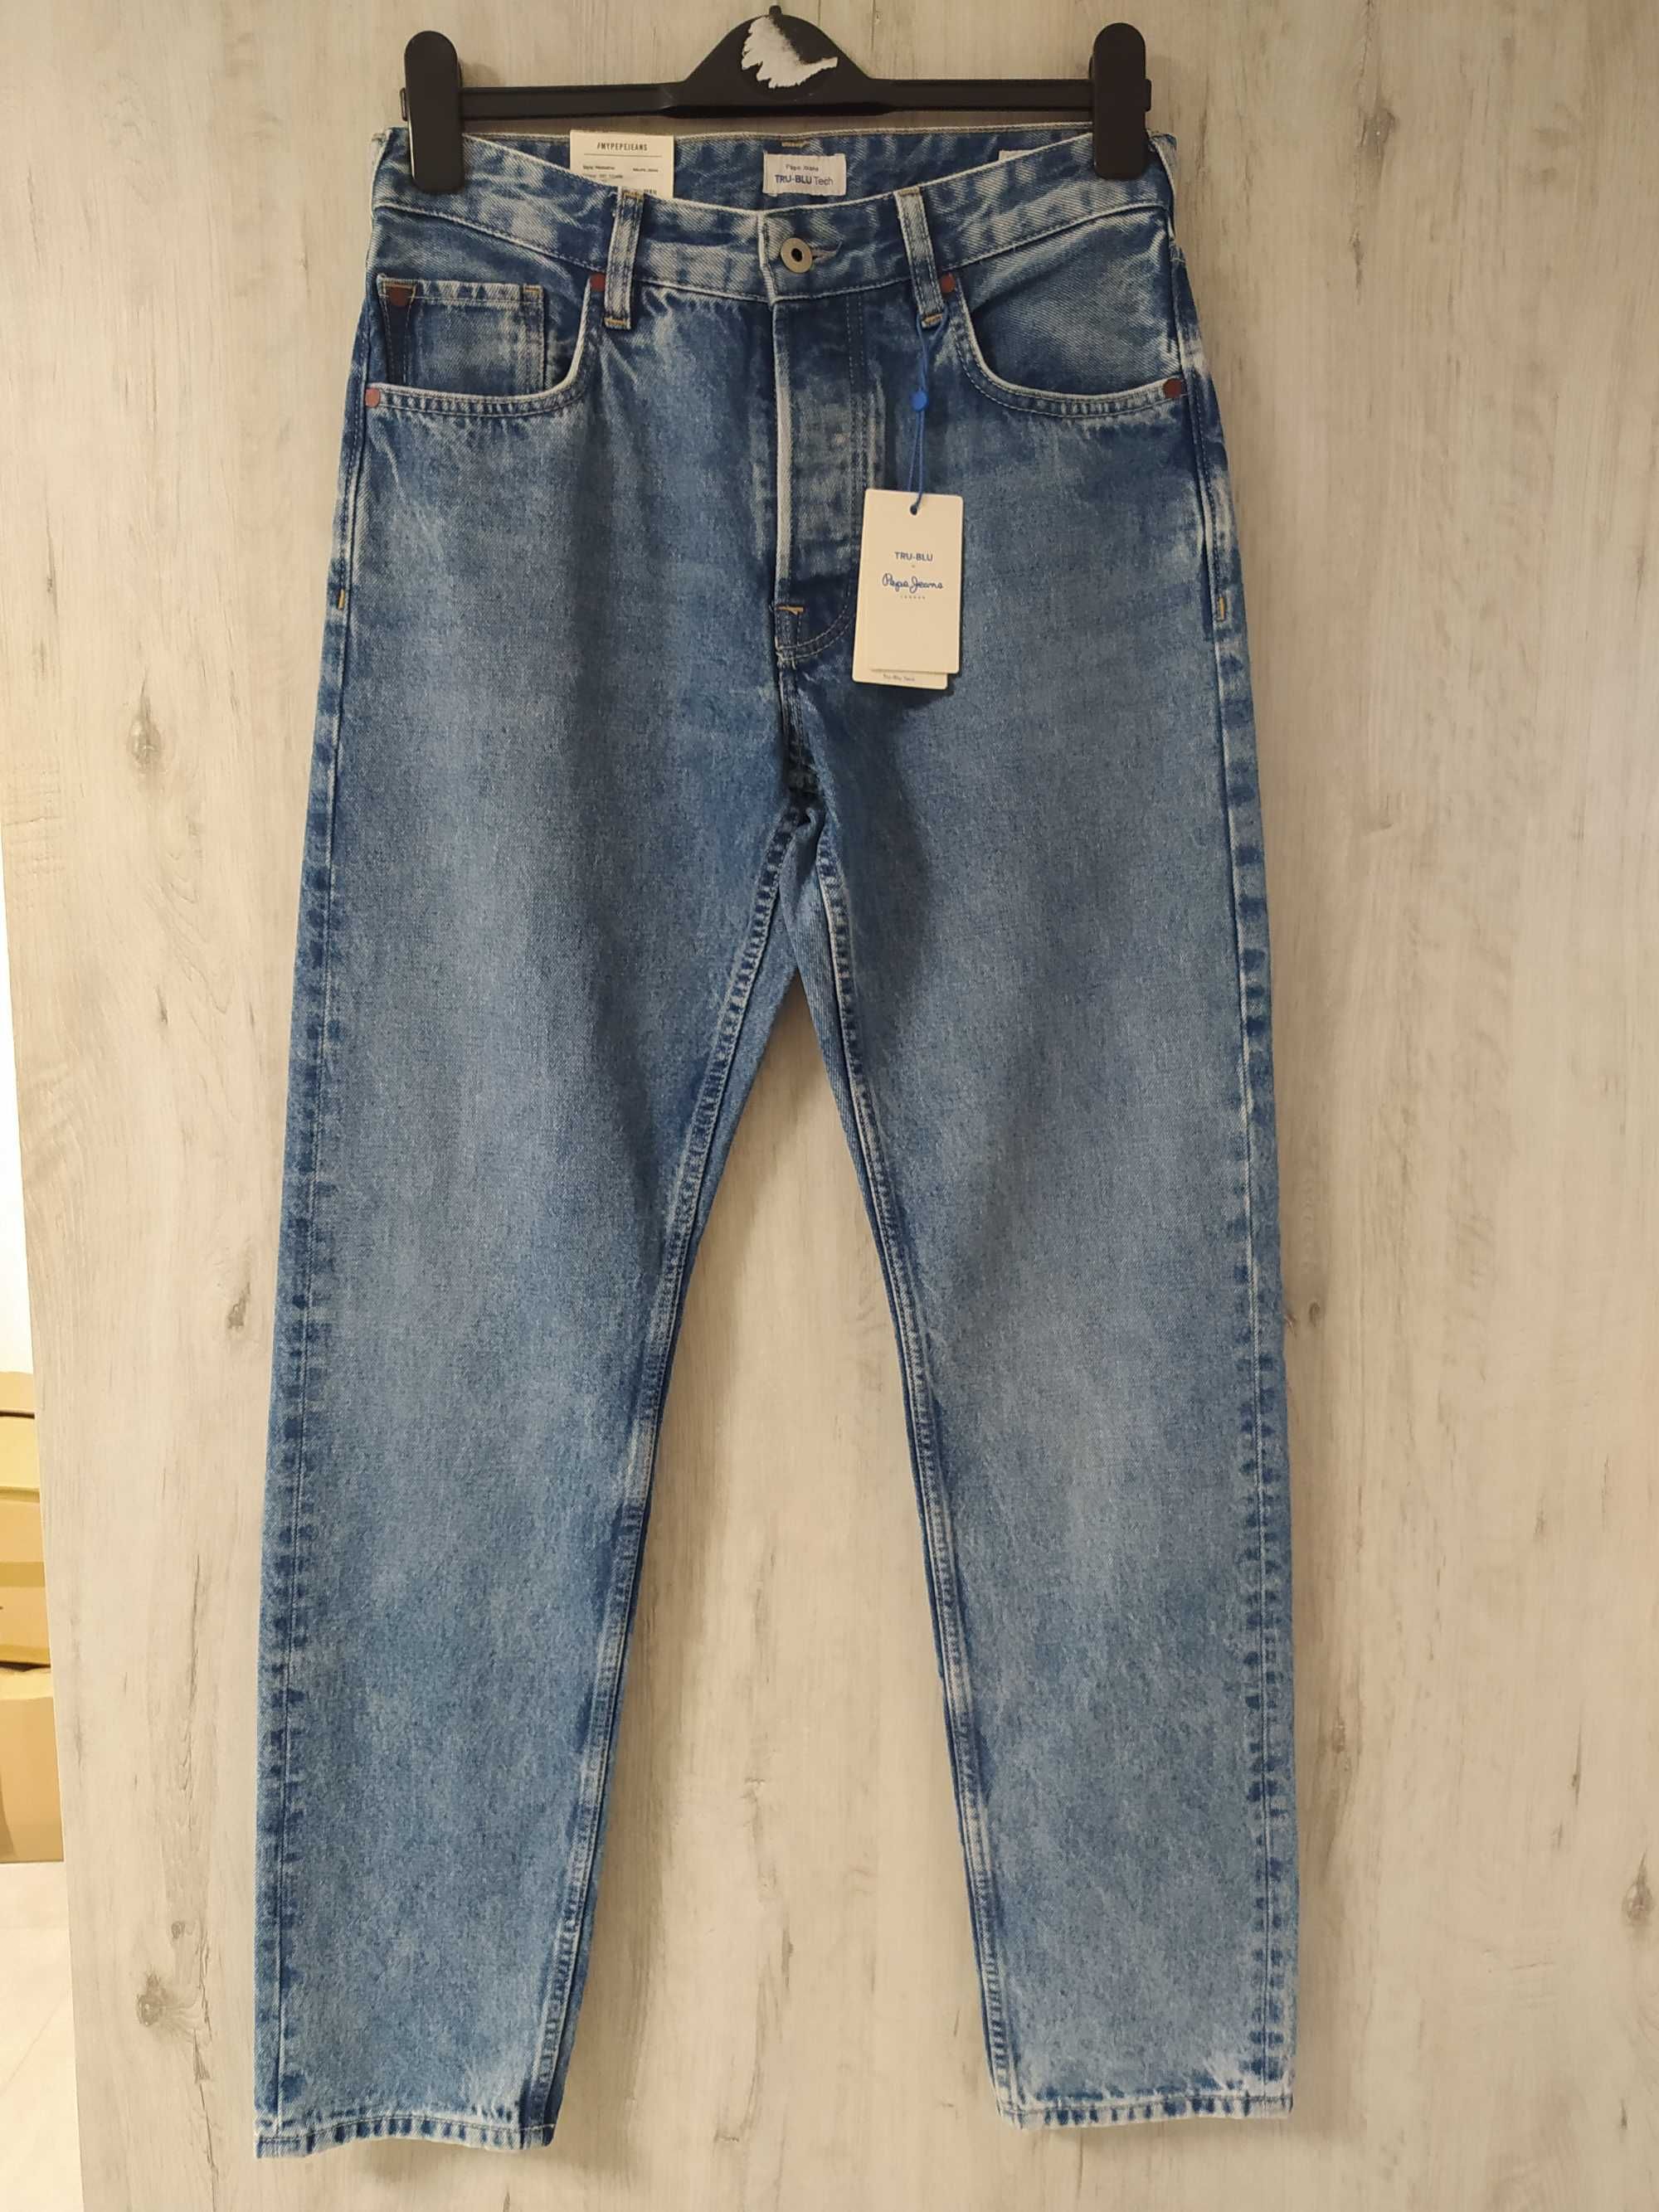 Jeans Pepejeans, 28/32 rozmiar, nowe.